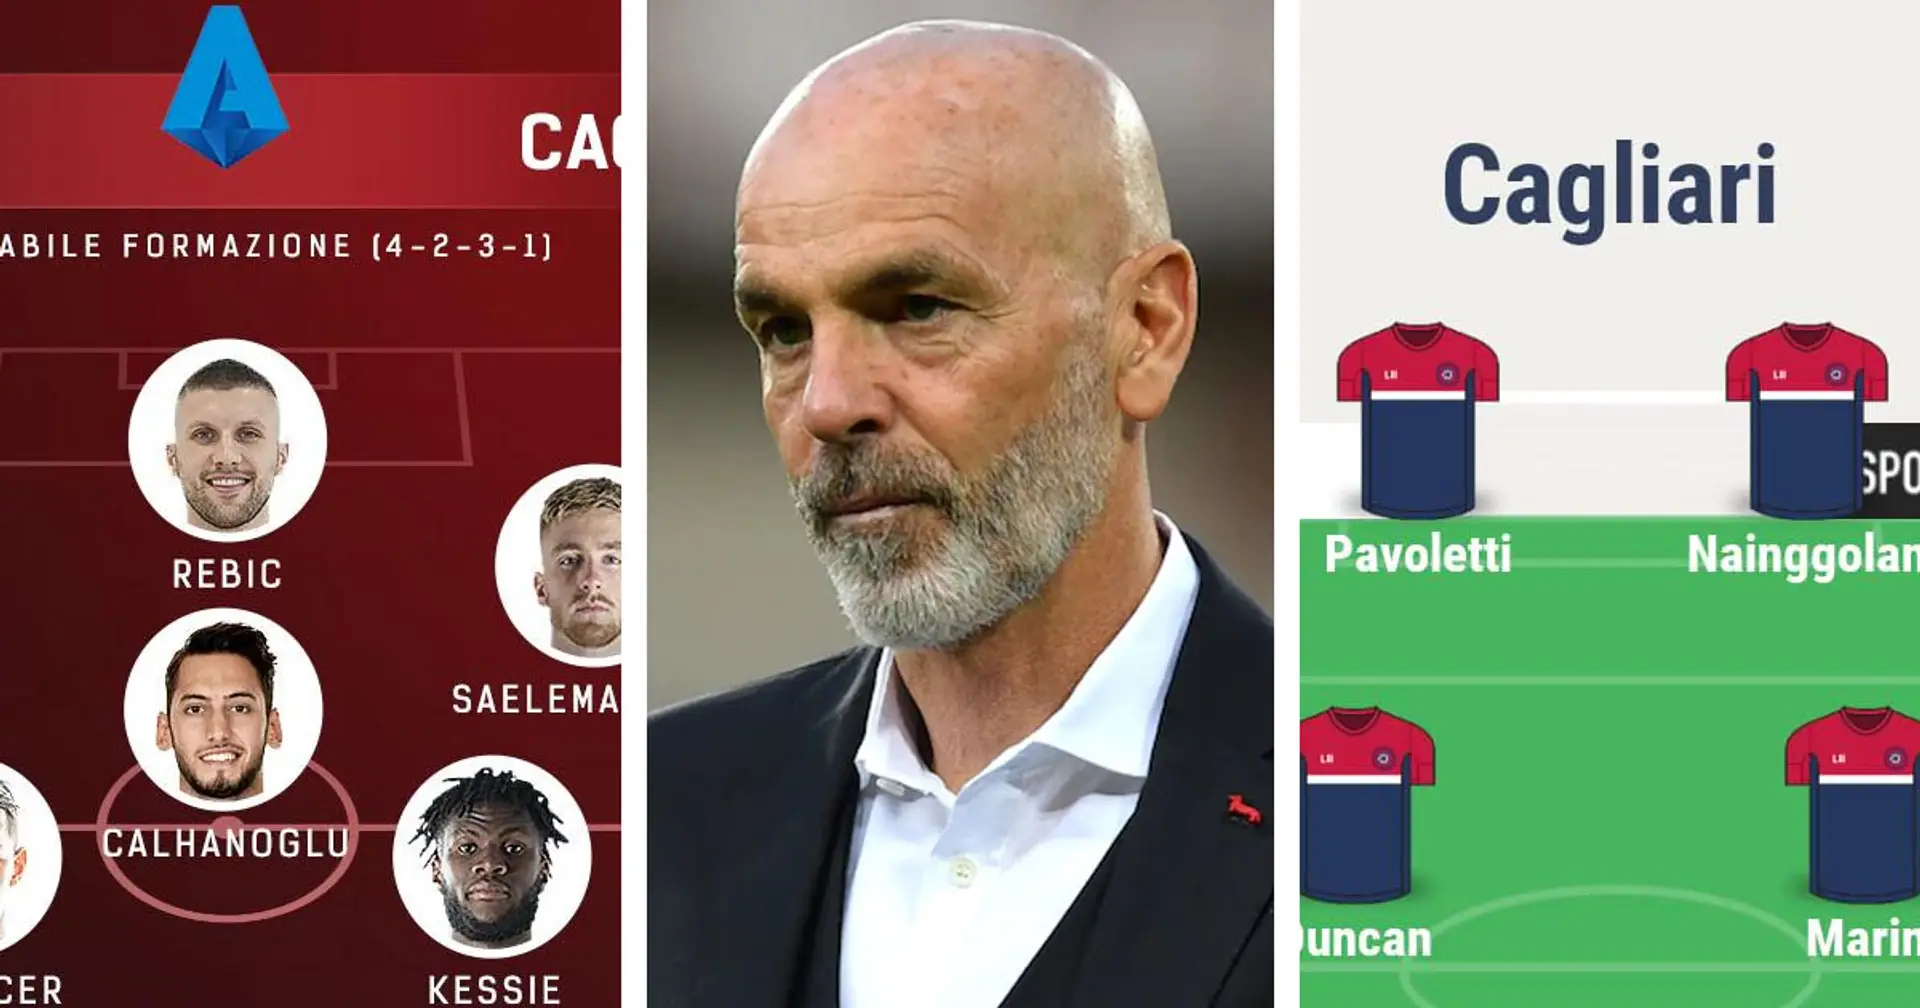 Il possibile XI del Milan vs l'XI del Cagliari: ecco quale giocatore può fare la differenza 